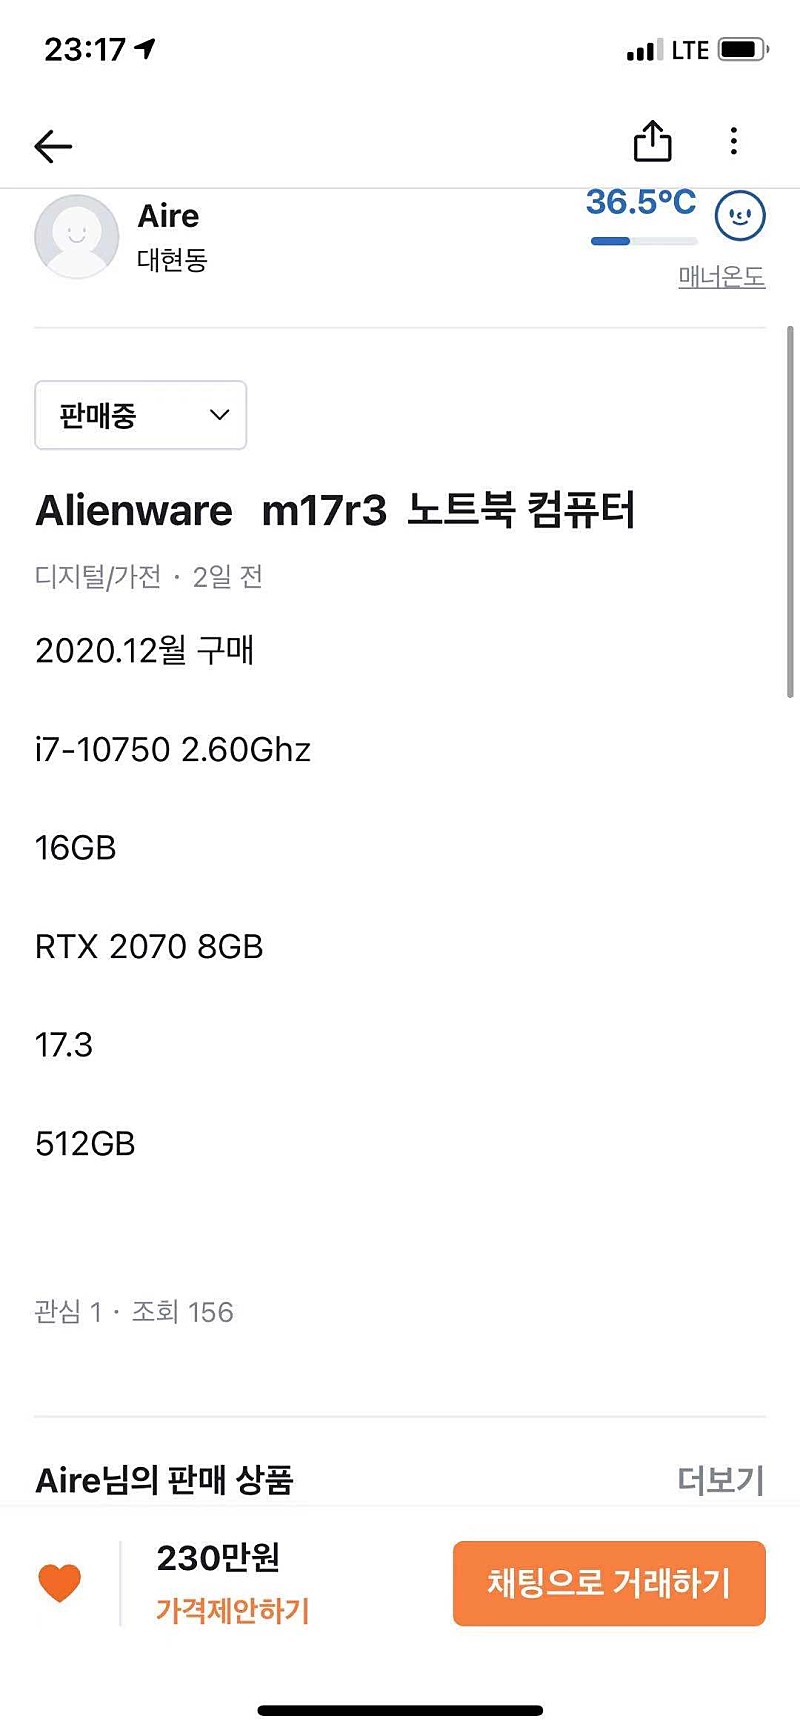 Alienware m17r3 노트북 판매